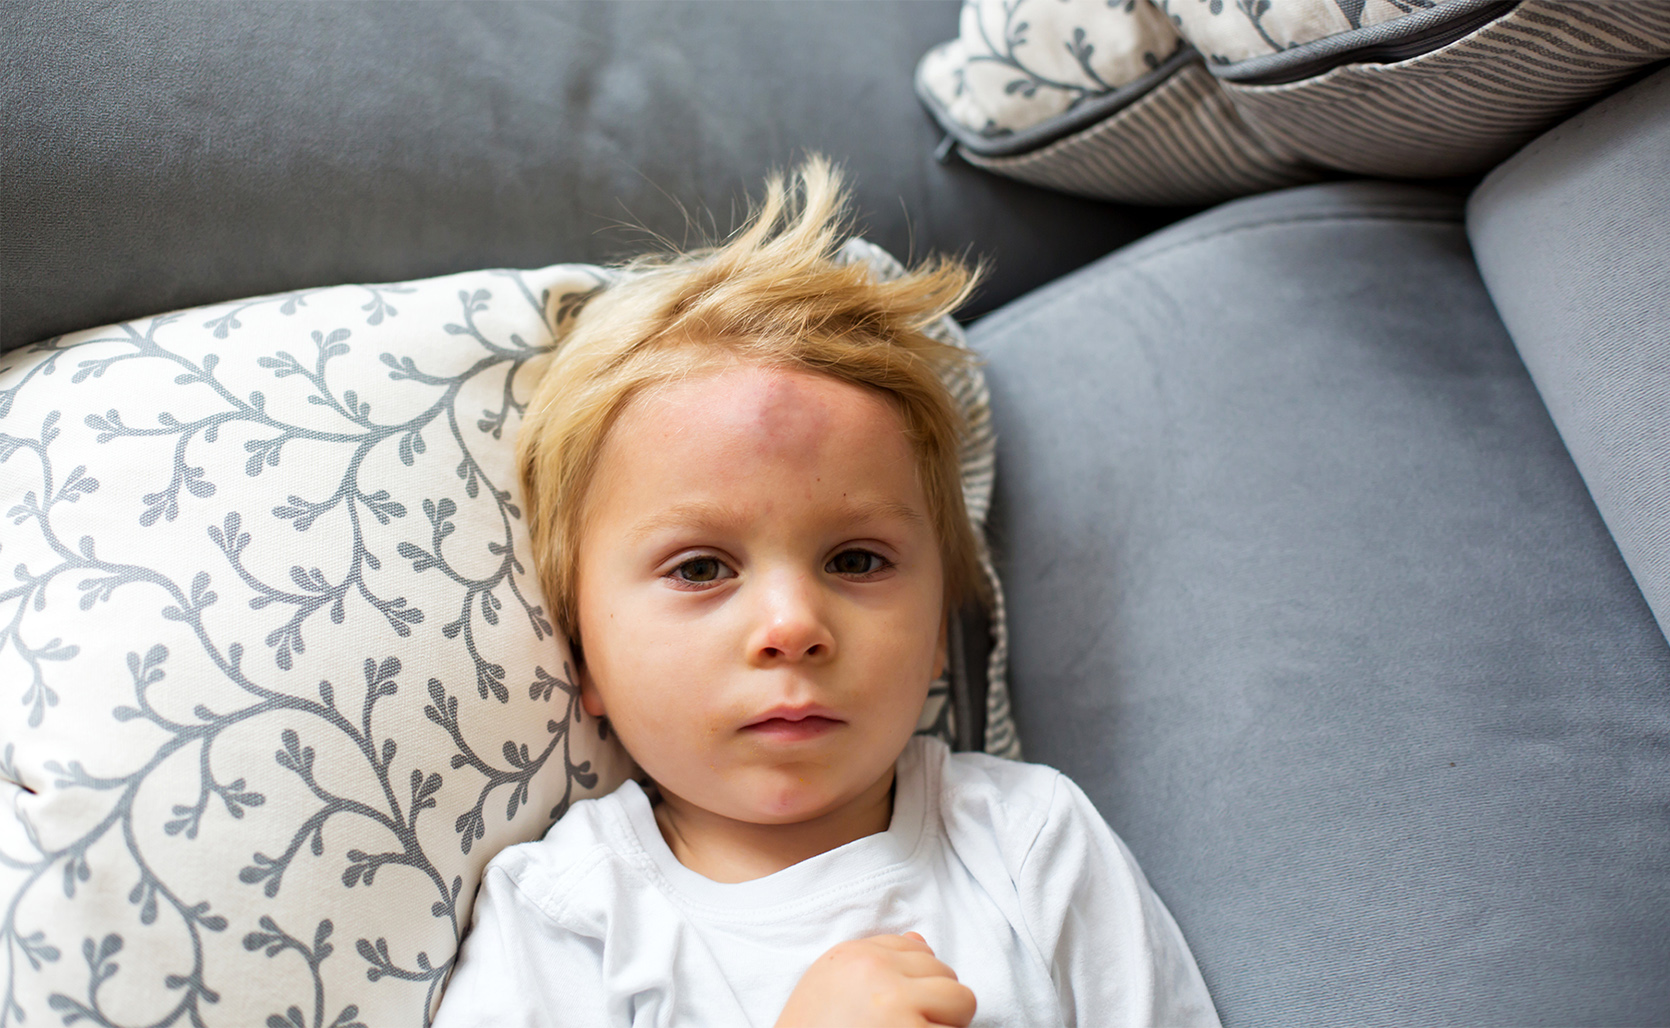 Wstrząs mózgu u dziecka – dowiedz się, co zrobić!/fot. iStock